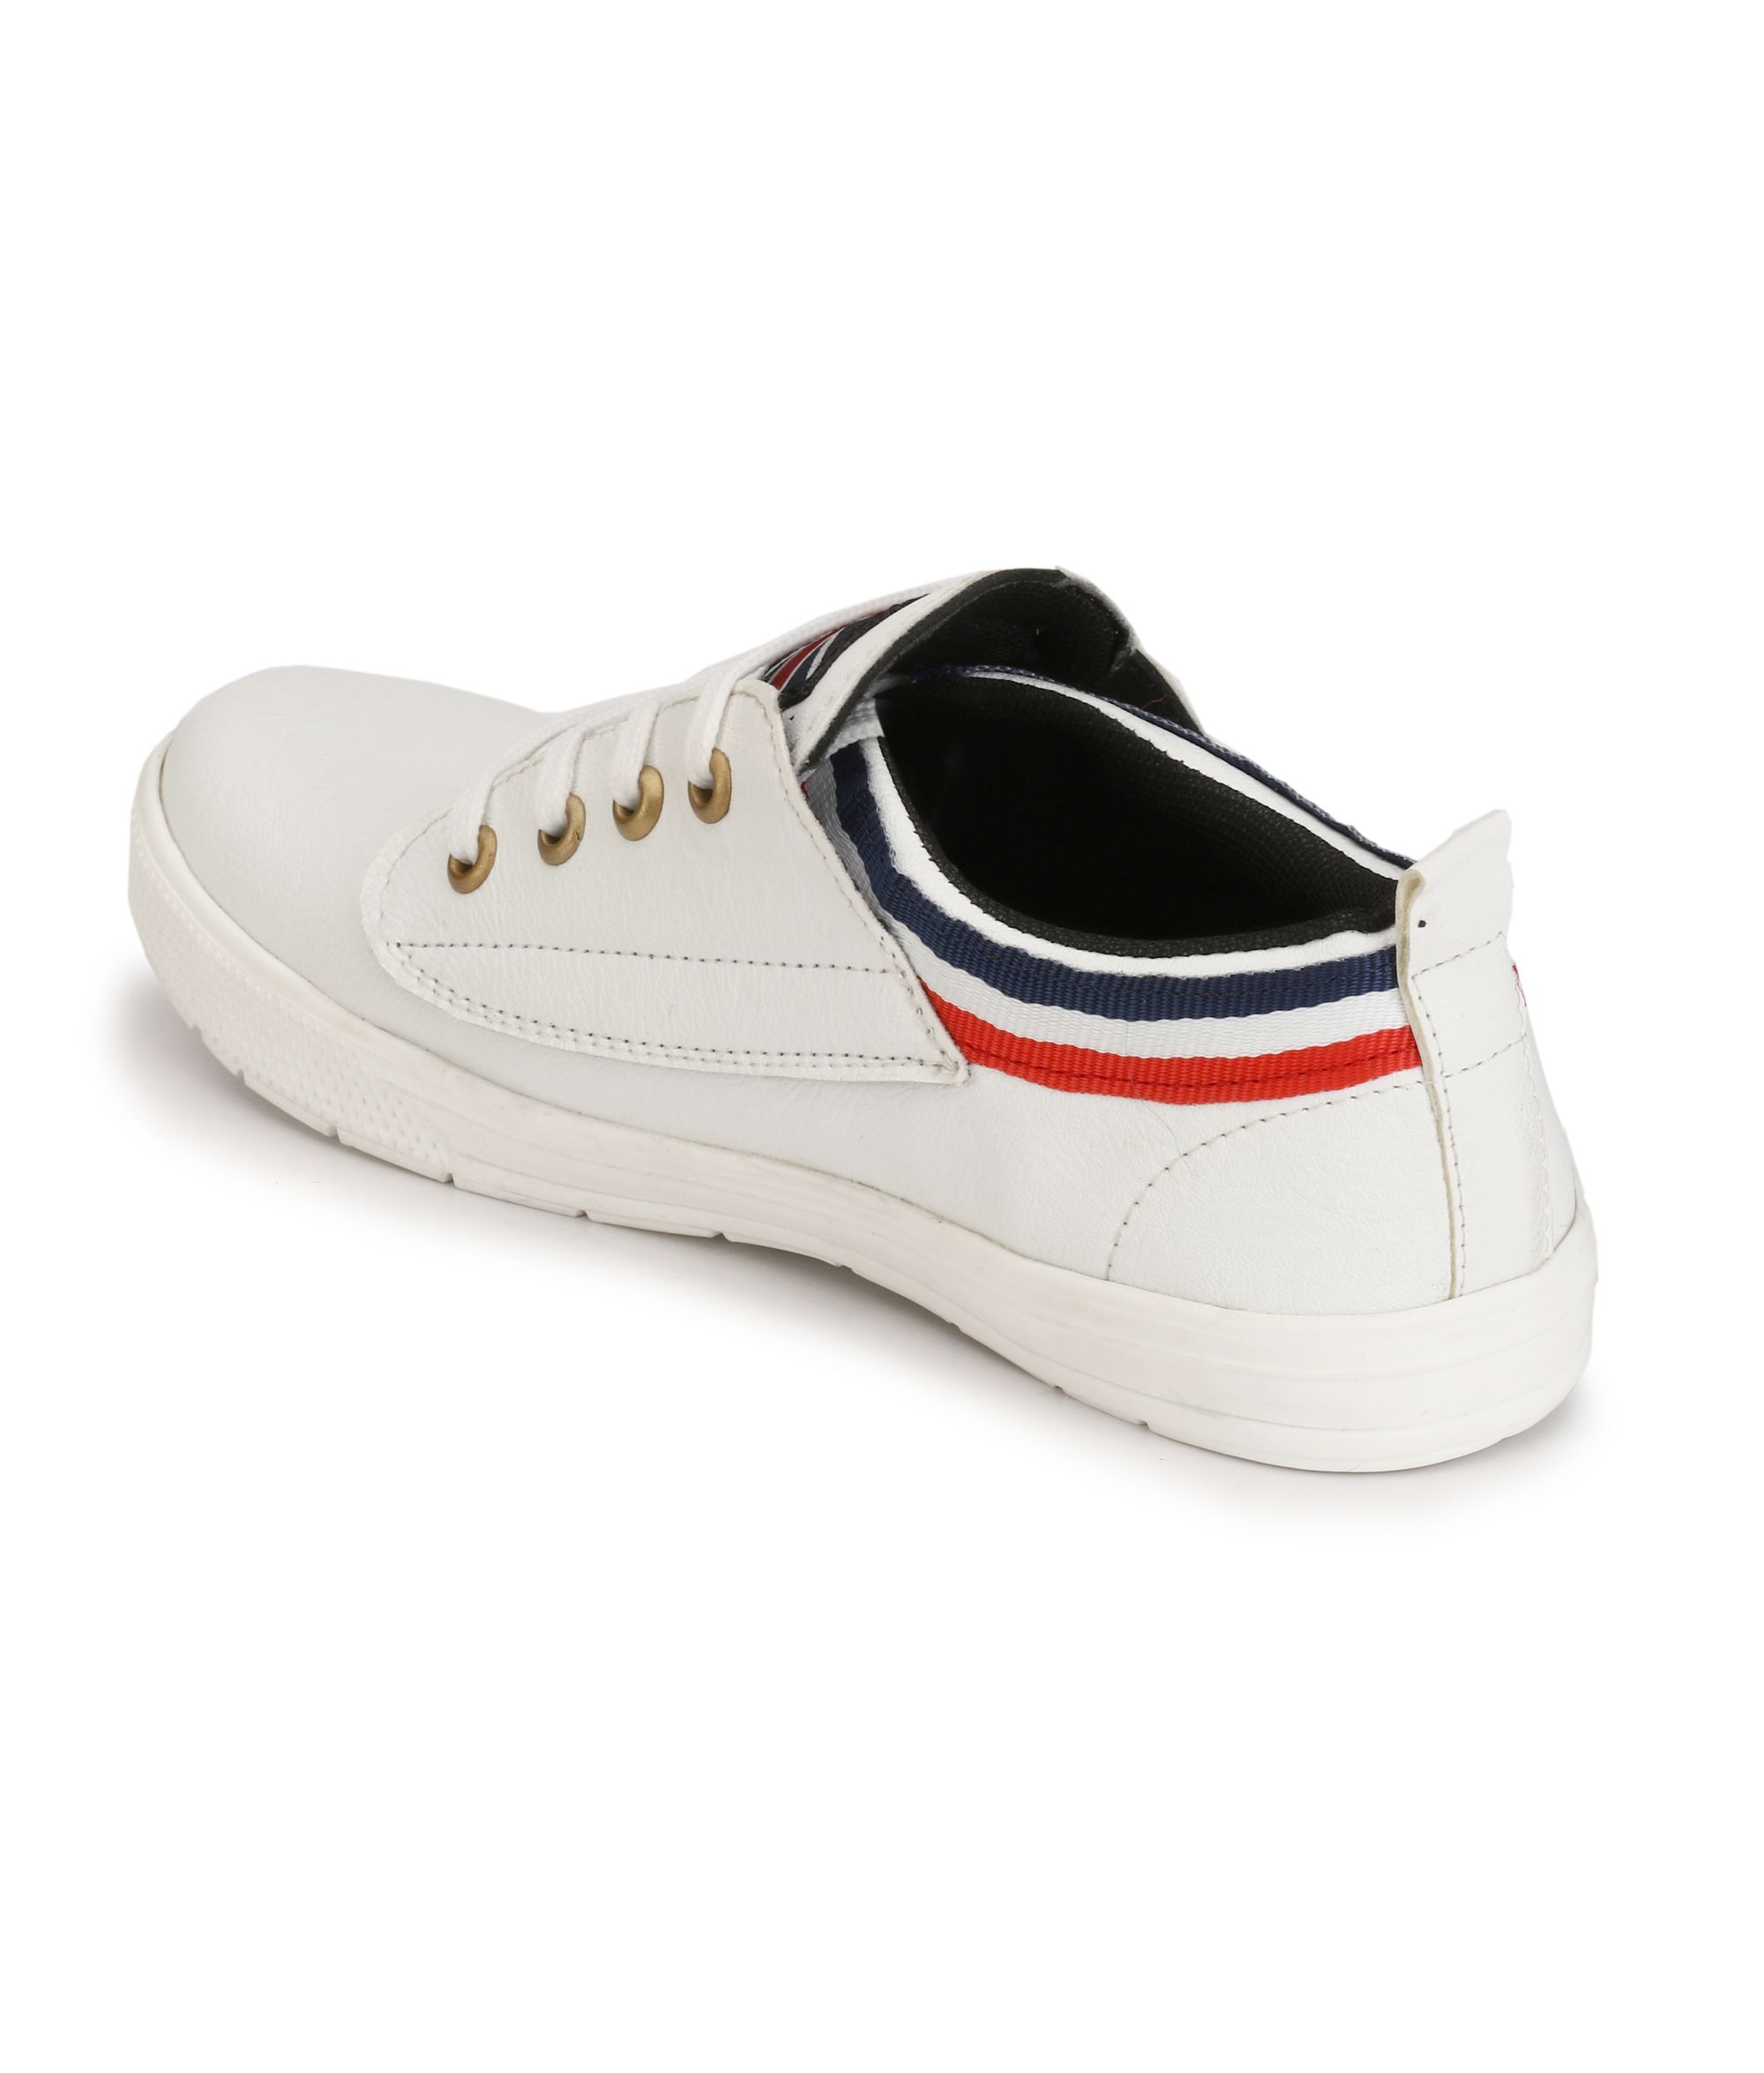 SNEAKERS supars Sneakers White Casual Shoes - Buy SNEAKERS supars ...